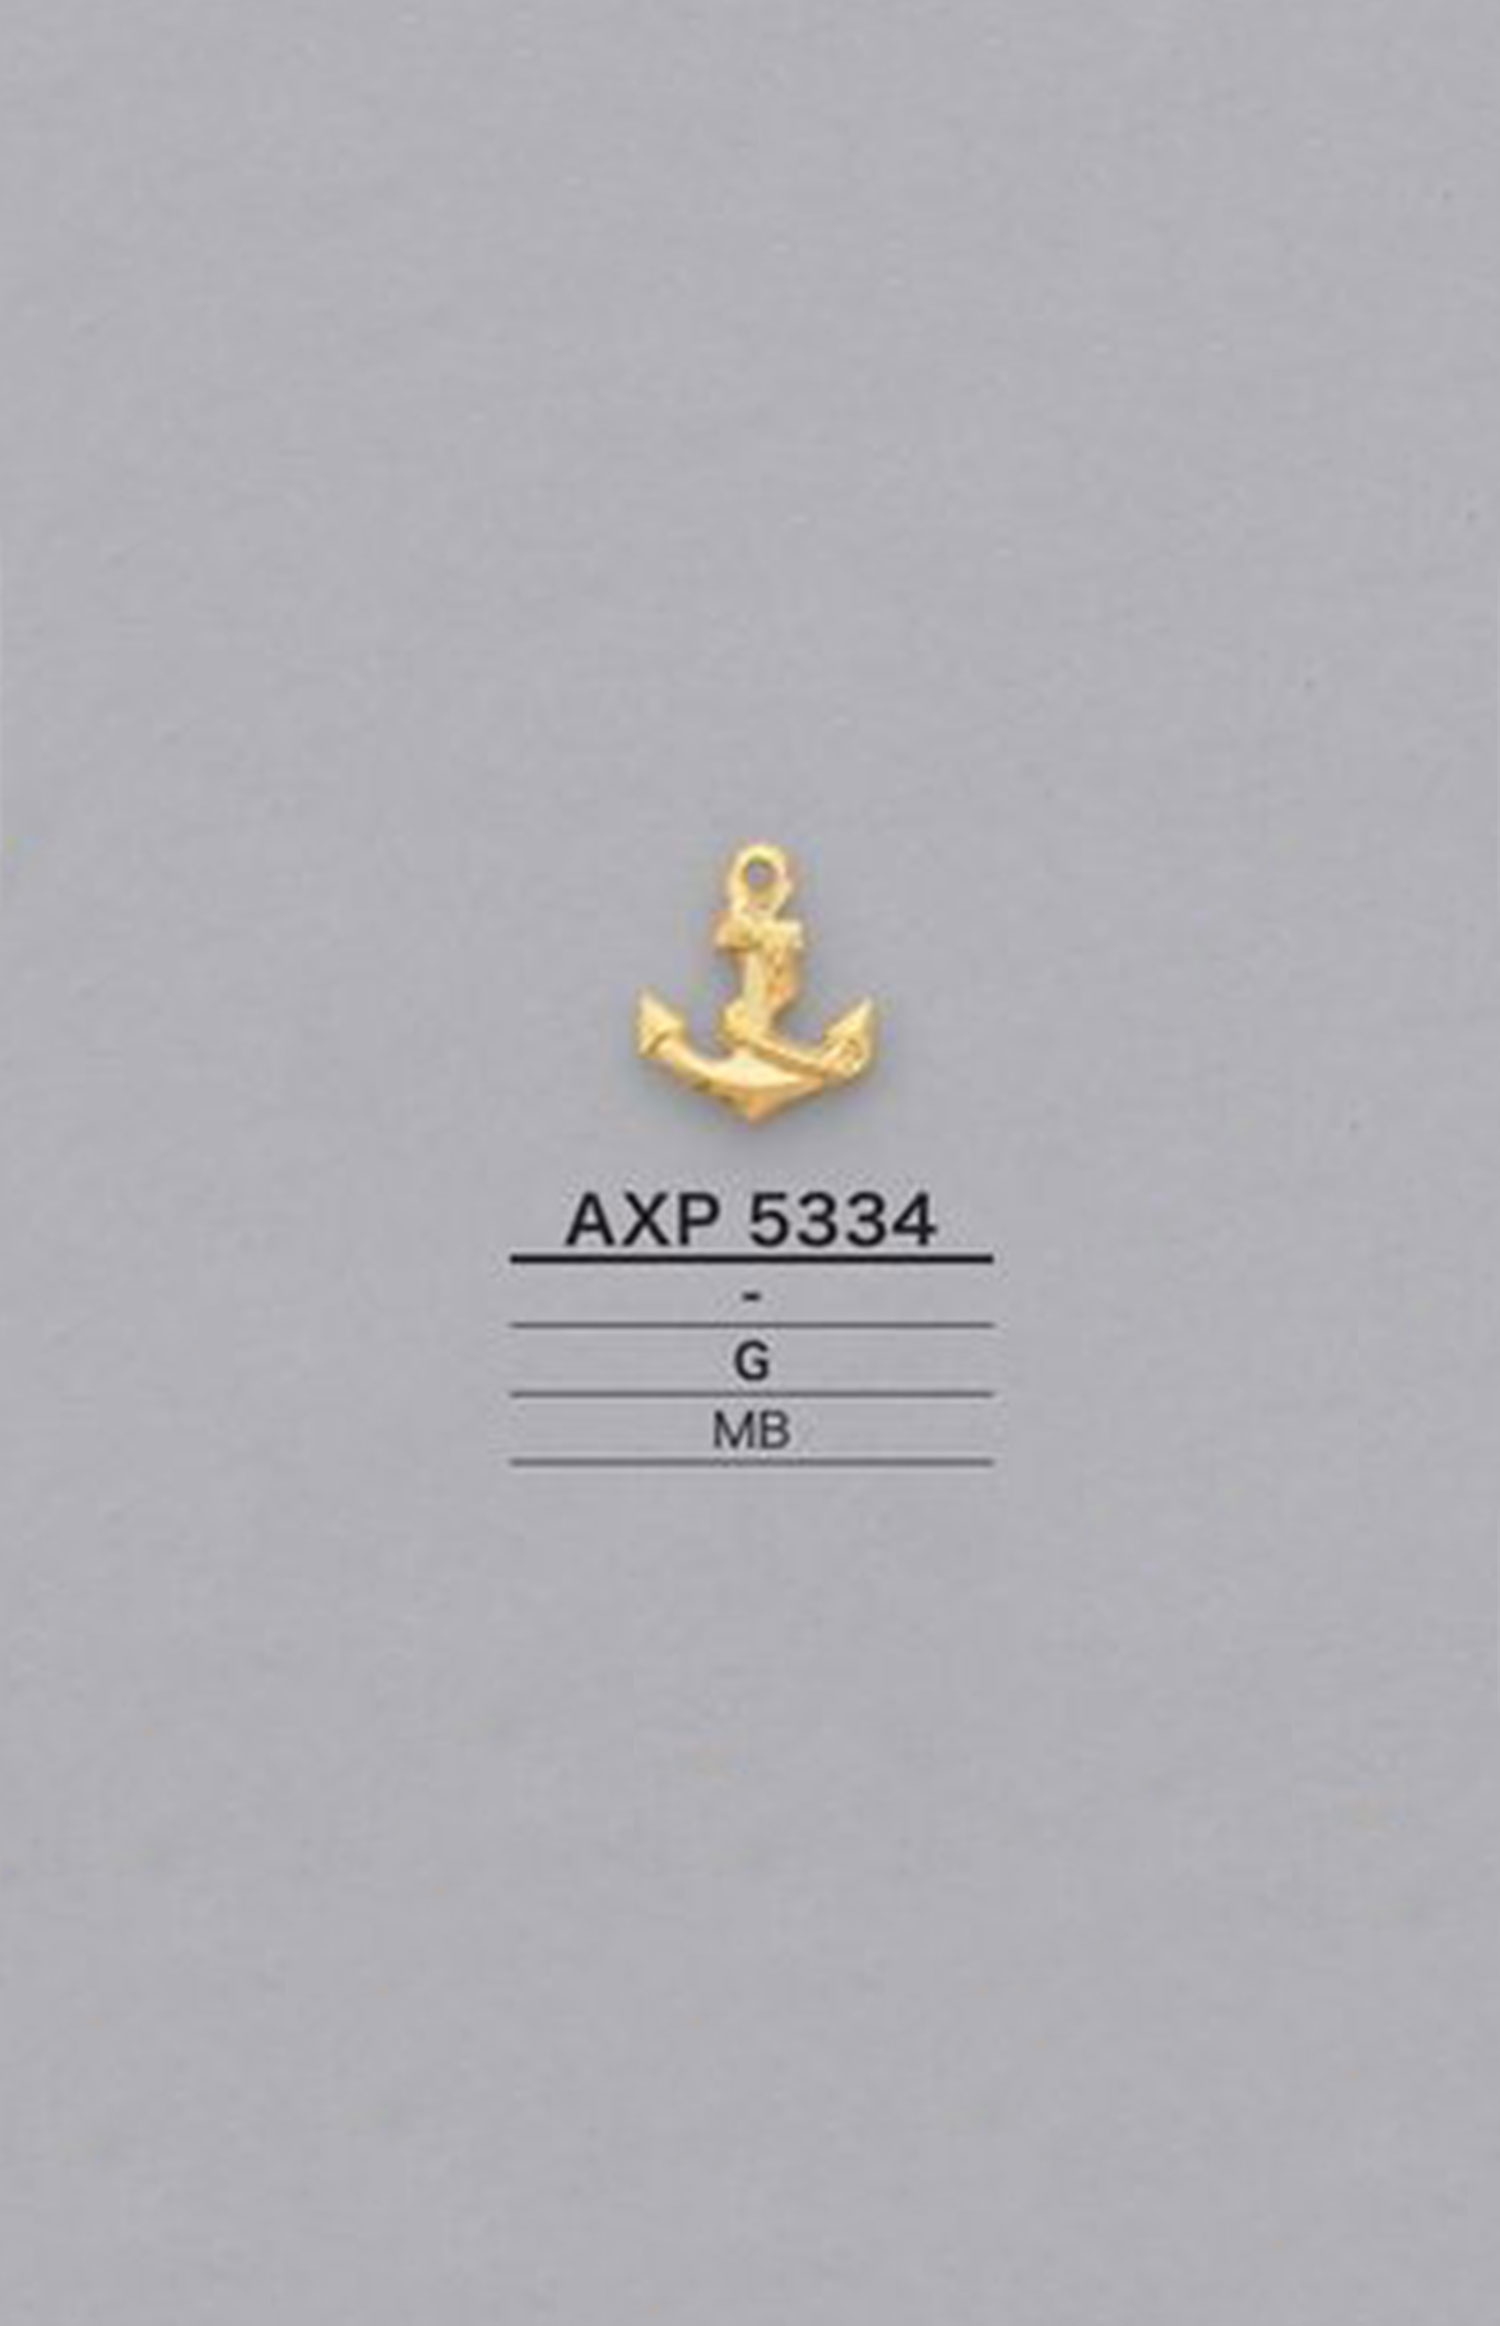 AXP5334 锚图形元素零件[杂货等] 爱丽丝纽扣